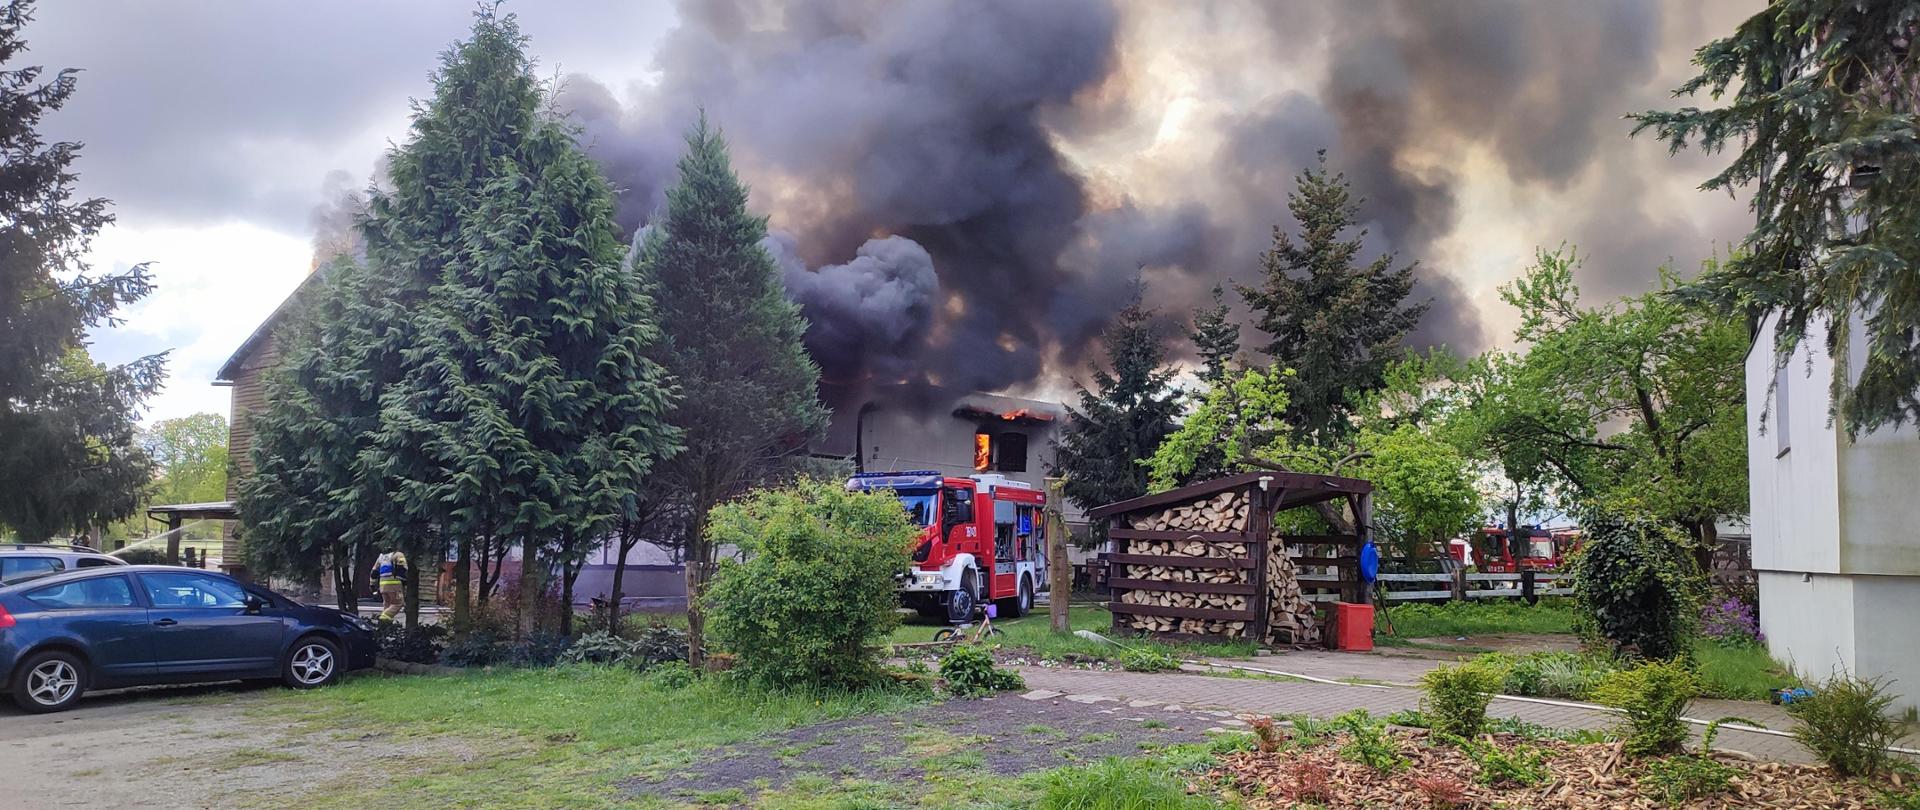 Zdjęcie przedstawia objęty pożarem budynek stajni, z którego wydobywają się kłęby czarnego dymu. W tle znajdują się pojazdy pożarnicze.